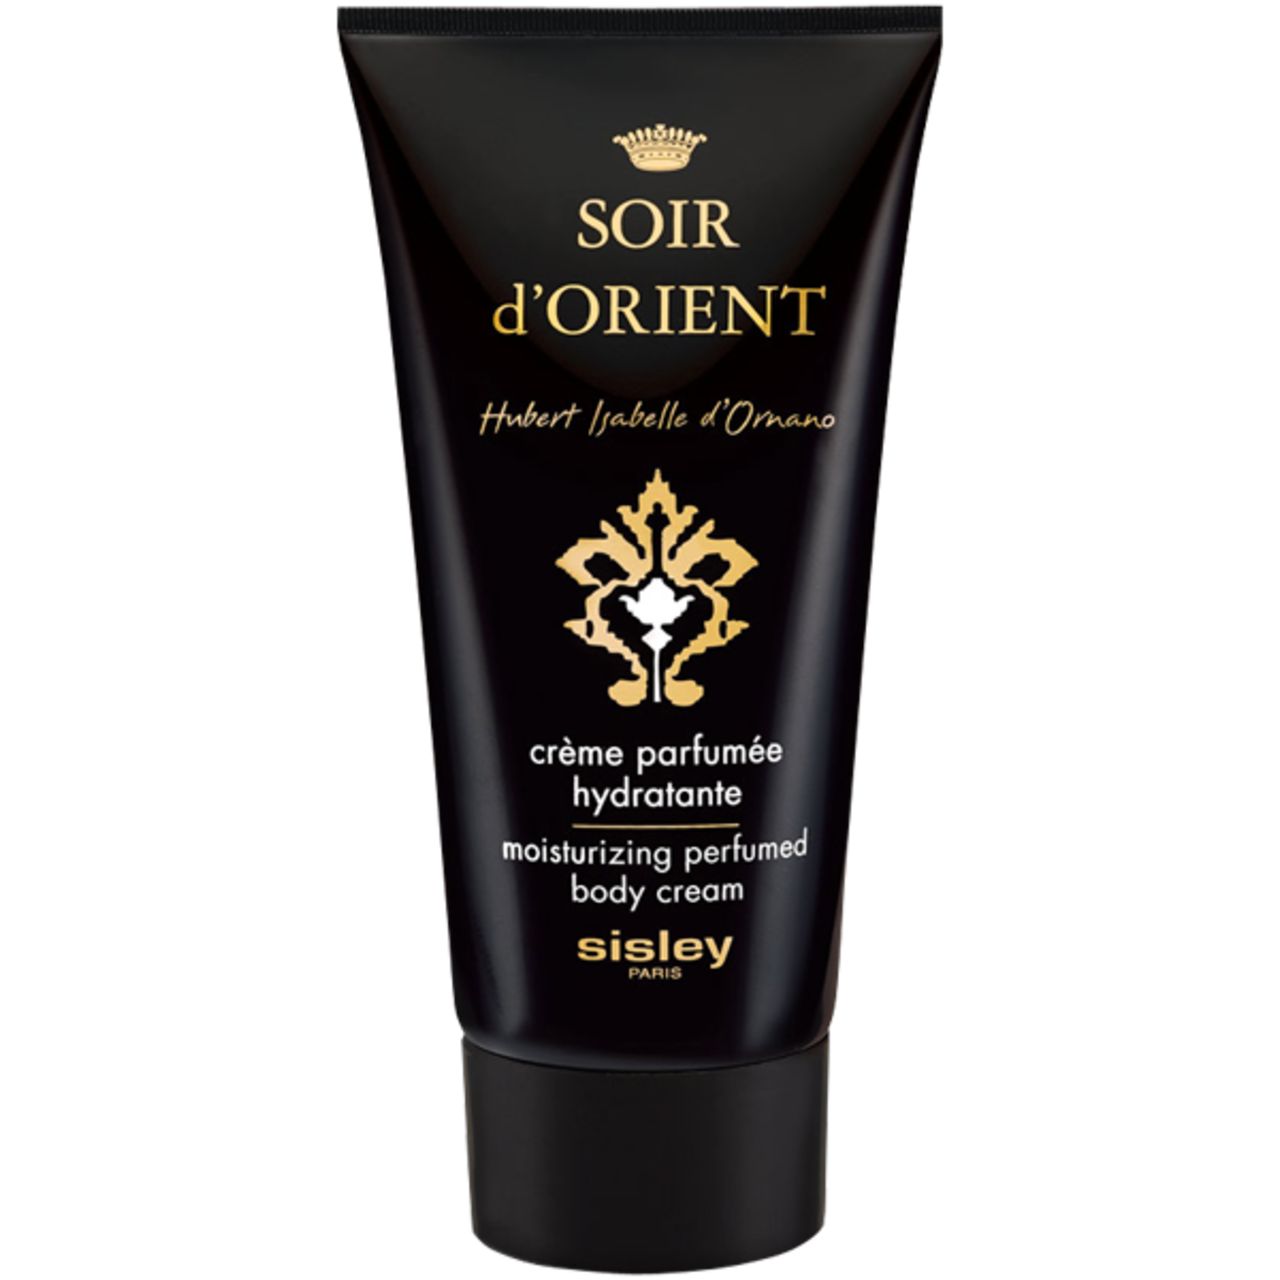 Sisley, Soir d'Orient Crème Parfumée Hydratante Corps